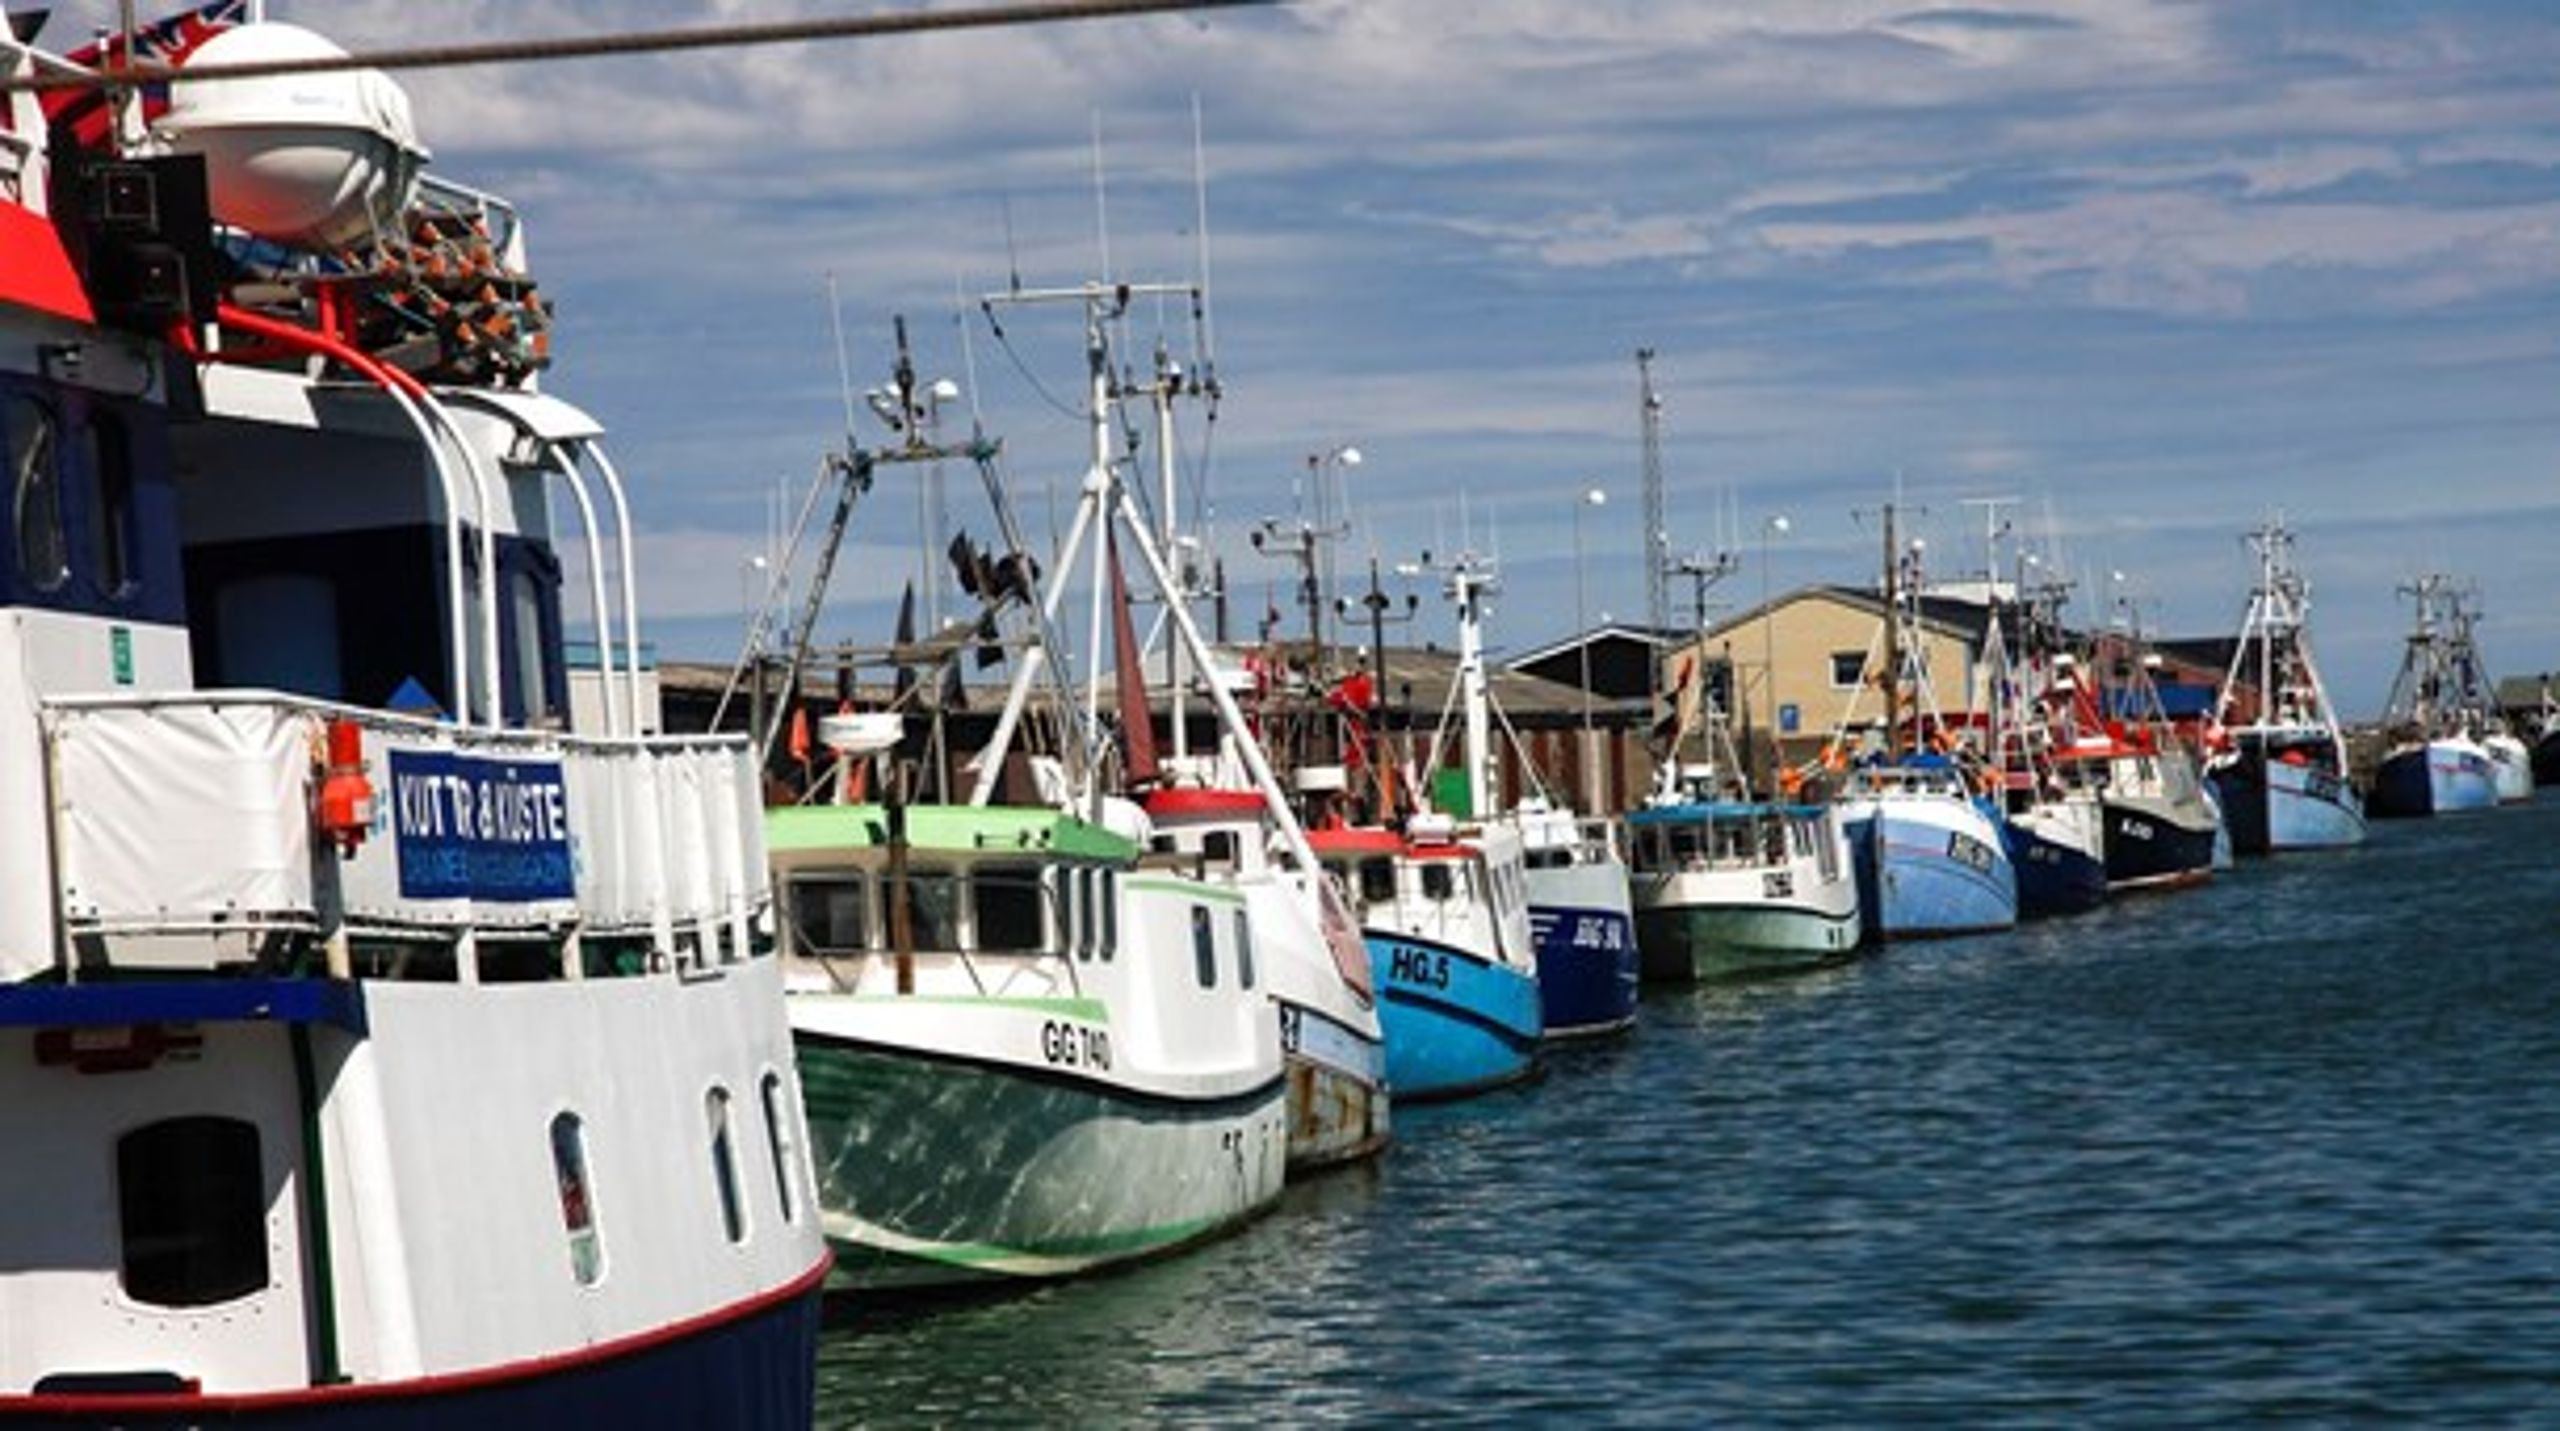 Den lokale fiskeriforening i Hirtshals er blandt dem, der nu vil søge at ændre sine vedtægter ved næste generalforsamling, så der ikke er forbud mod dobbelt medlemskab af flere foreninger. ARKIV.